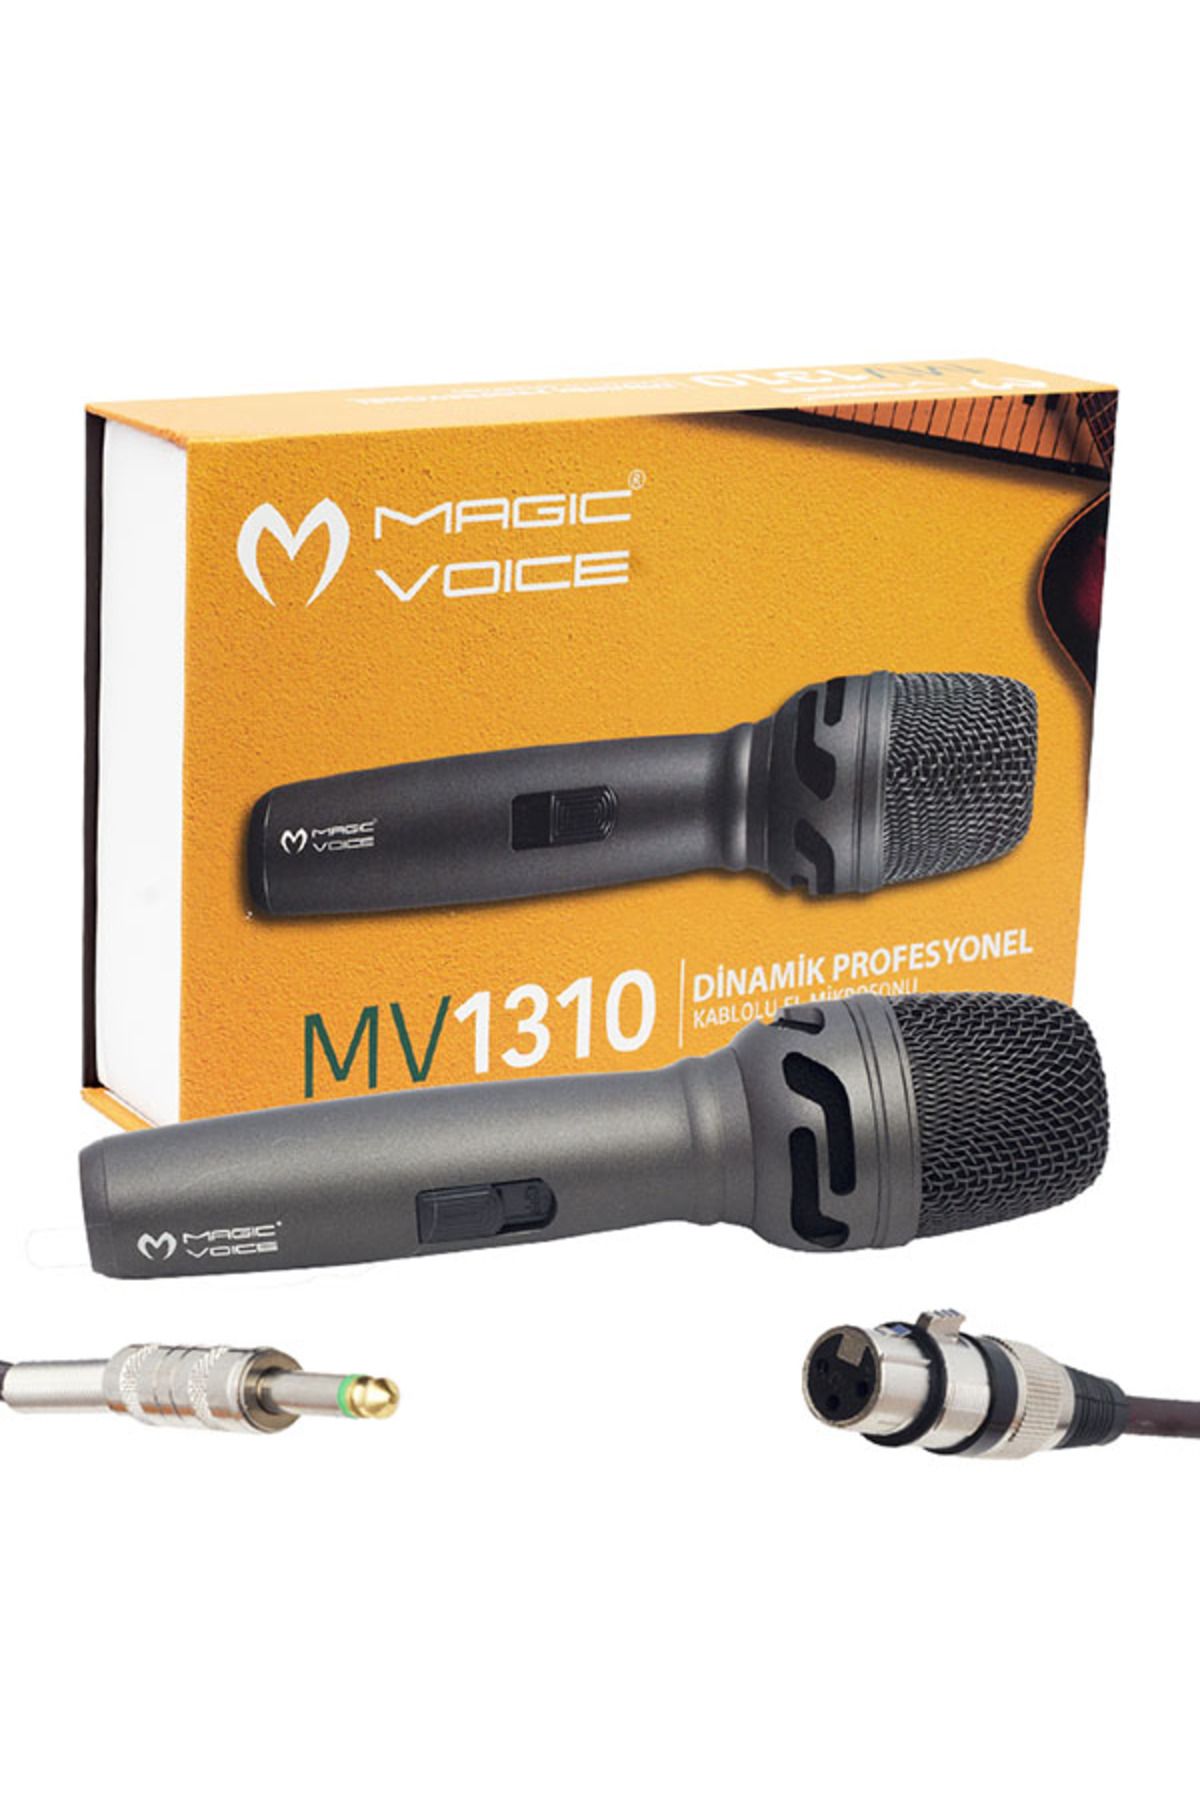 Genel Markalar Magıcvoıce Mv-1310 Dinamik Professıonal Kablolu El Mikrofonu (5 Metre Kablolu) (4172)